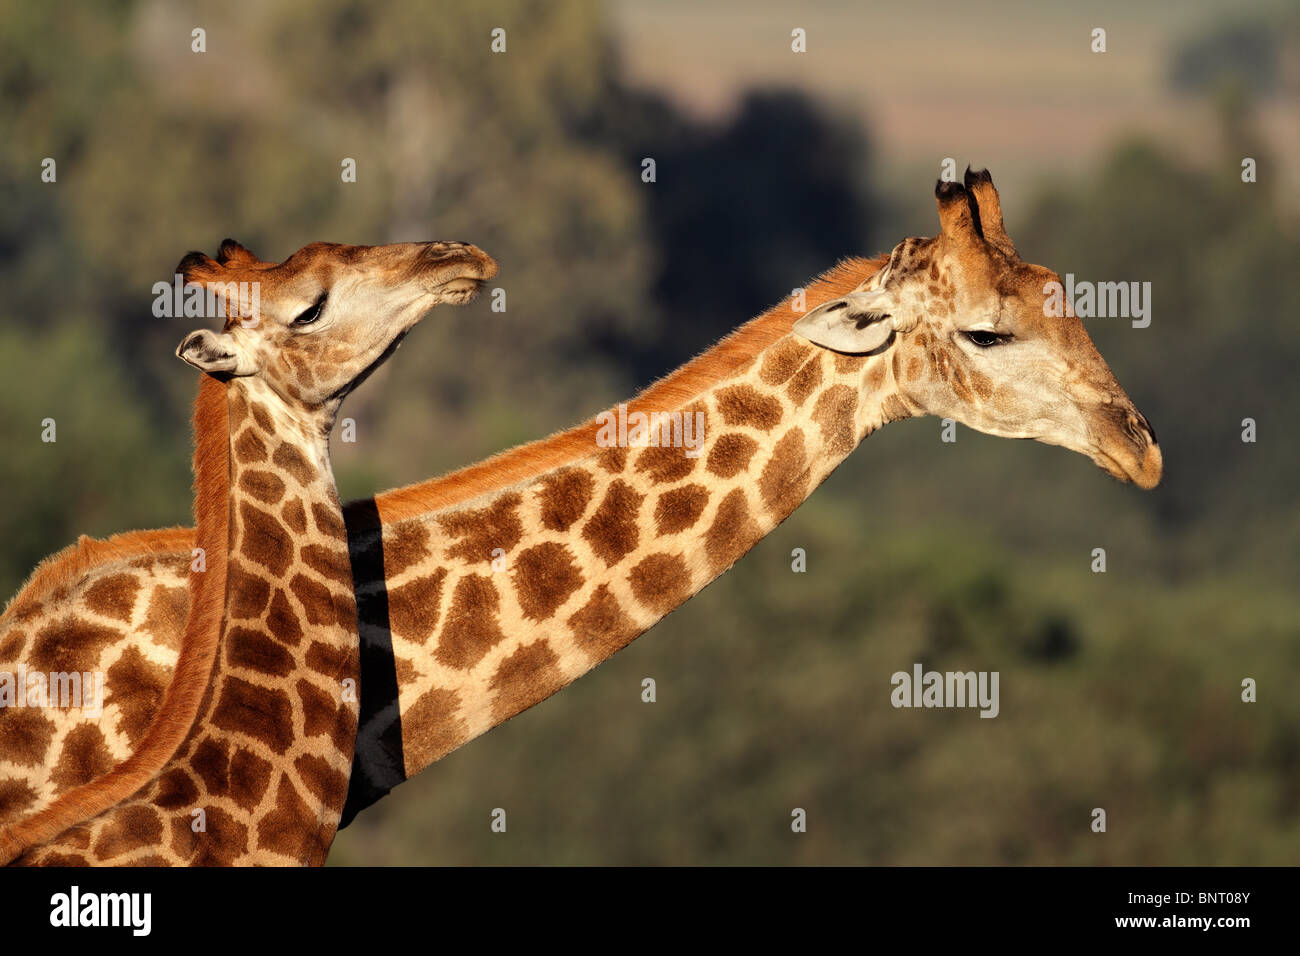 Interaction entre deux girafes (Giraffa camelopardalis), Afrique du Sud Banque D'Images